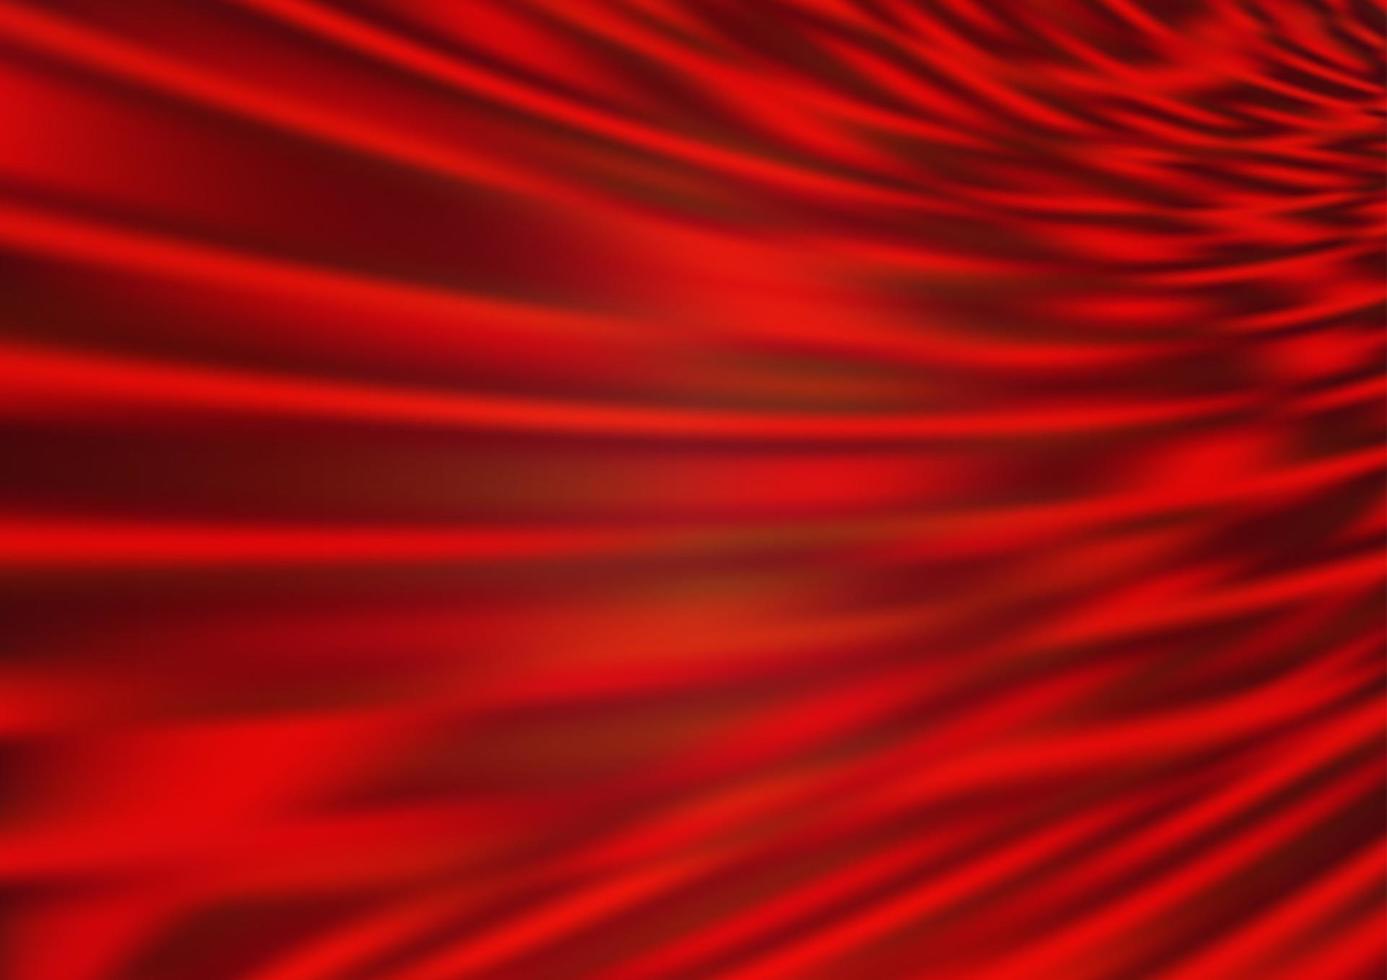 motif flou abstrait vecteur rouge clair.